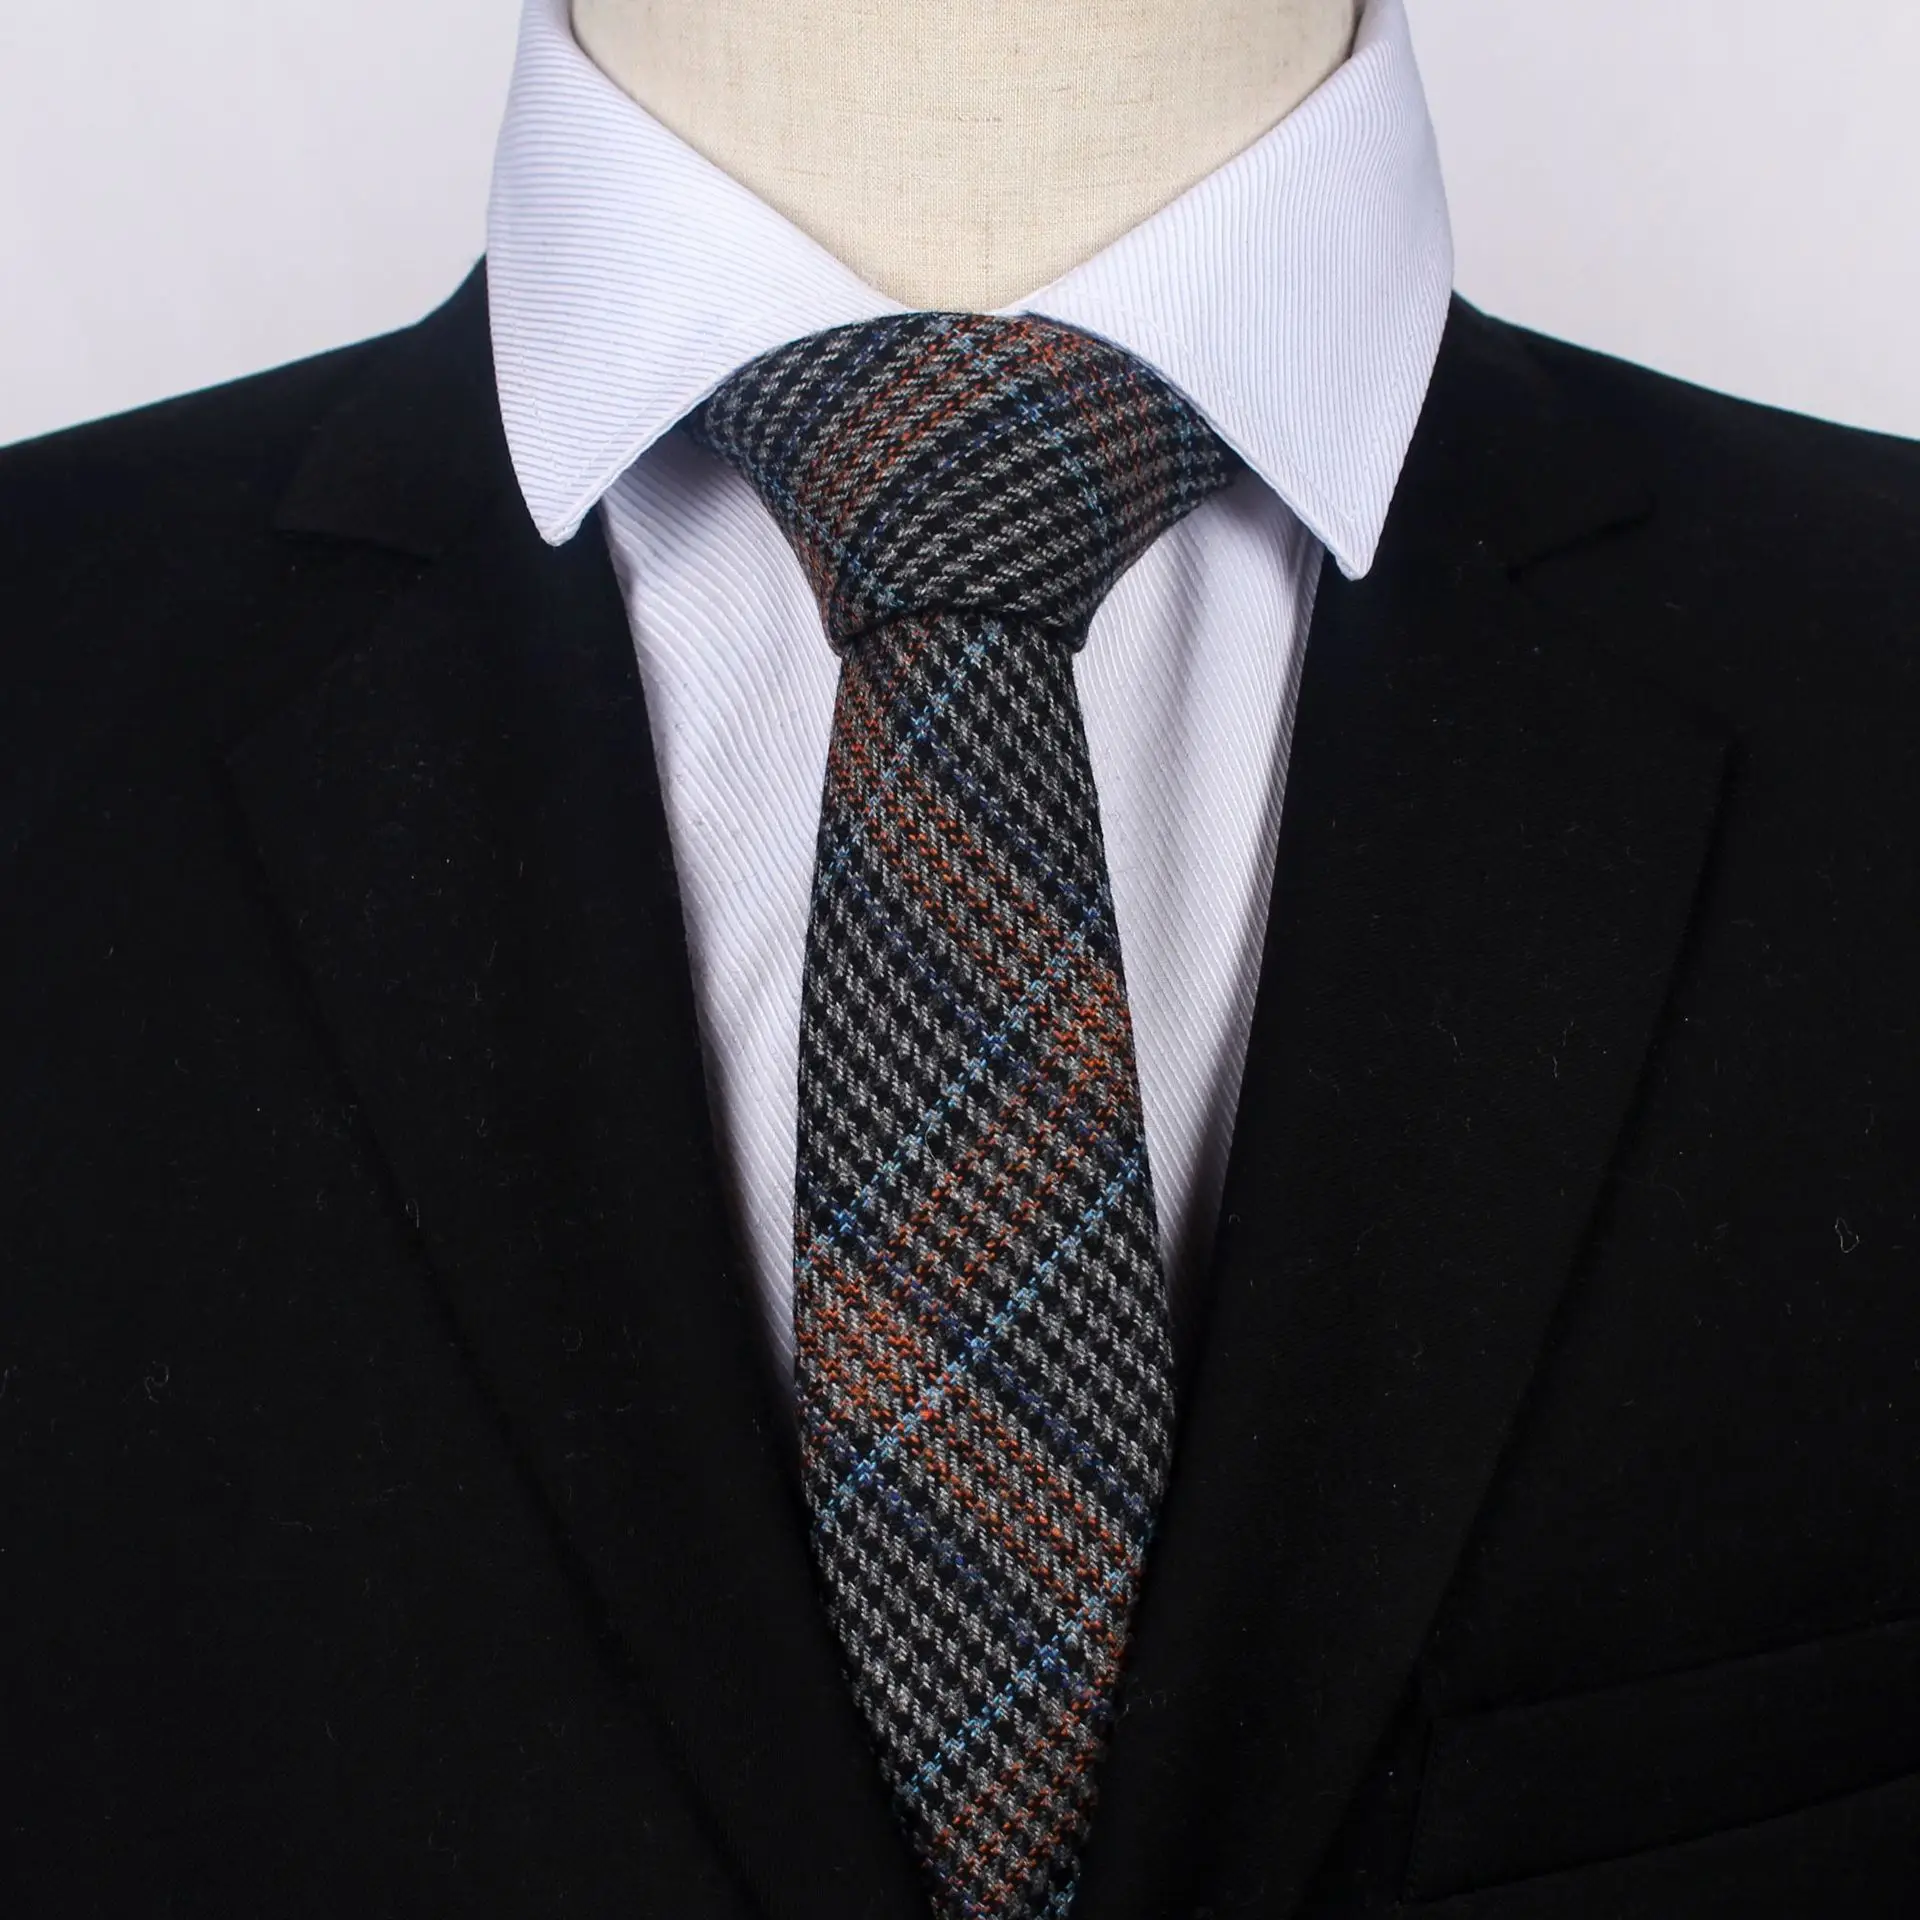 Аксессуары для одежды галстуки мужские шерсть 6,0 см широкие клетчатые Хаундстут модные галстуки для взрослых пряжа-краситель Геометрическая Шея галстук для мальчиков и девочек - Цвет: Yarn-Dye WT003-A